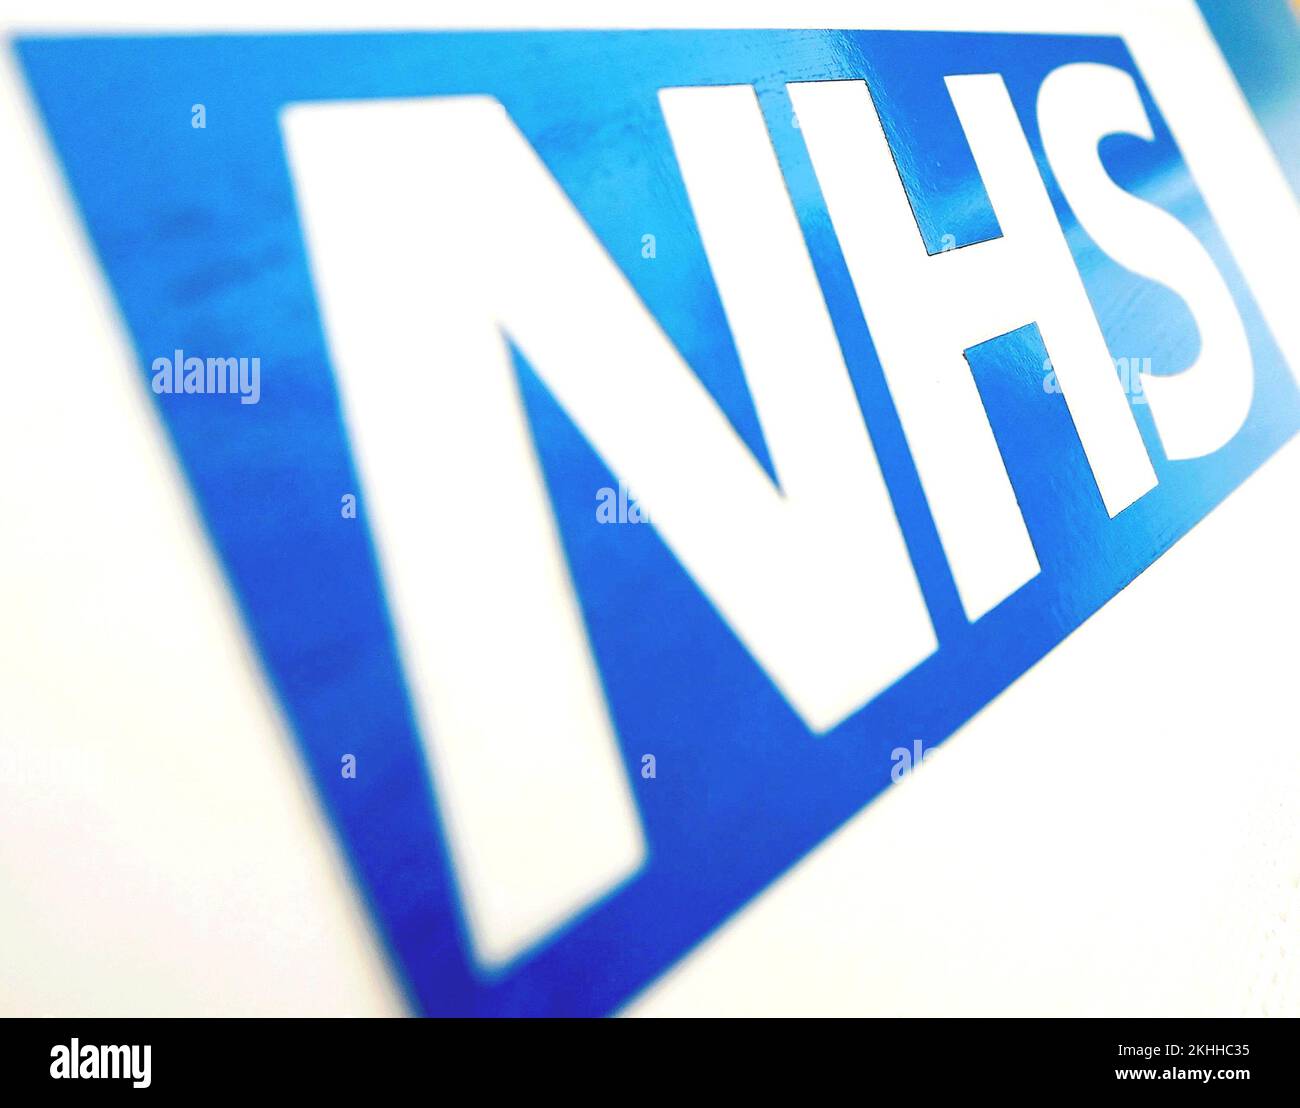 Photo du dossier datée du 06/11/10 du logo du NHS, une fiducie de santé mentale du NHS a reçu des avis d'avertissement pour s'améliorer après que les inspecteurs ont constaté qu'il n'y avait pas assez de personnel pour s'occuper des patients en raison d'une série de préoccupations en matière de sécurité. Banque D'Images